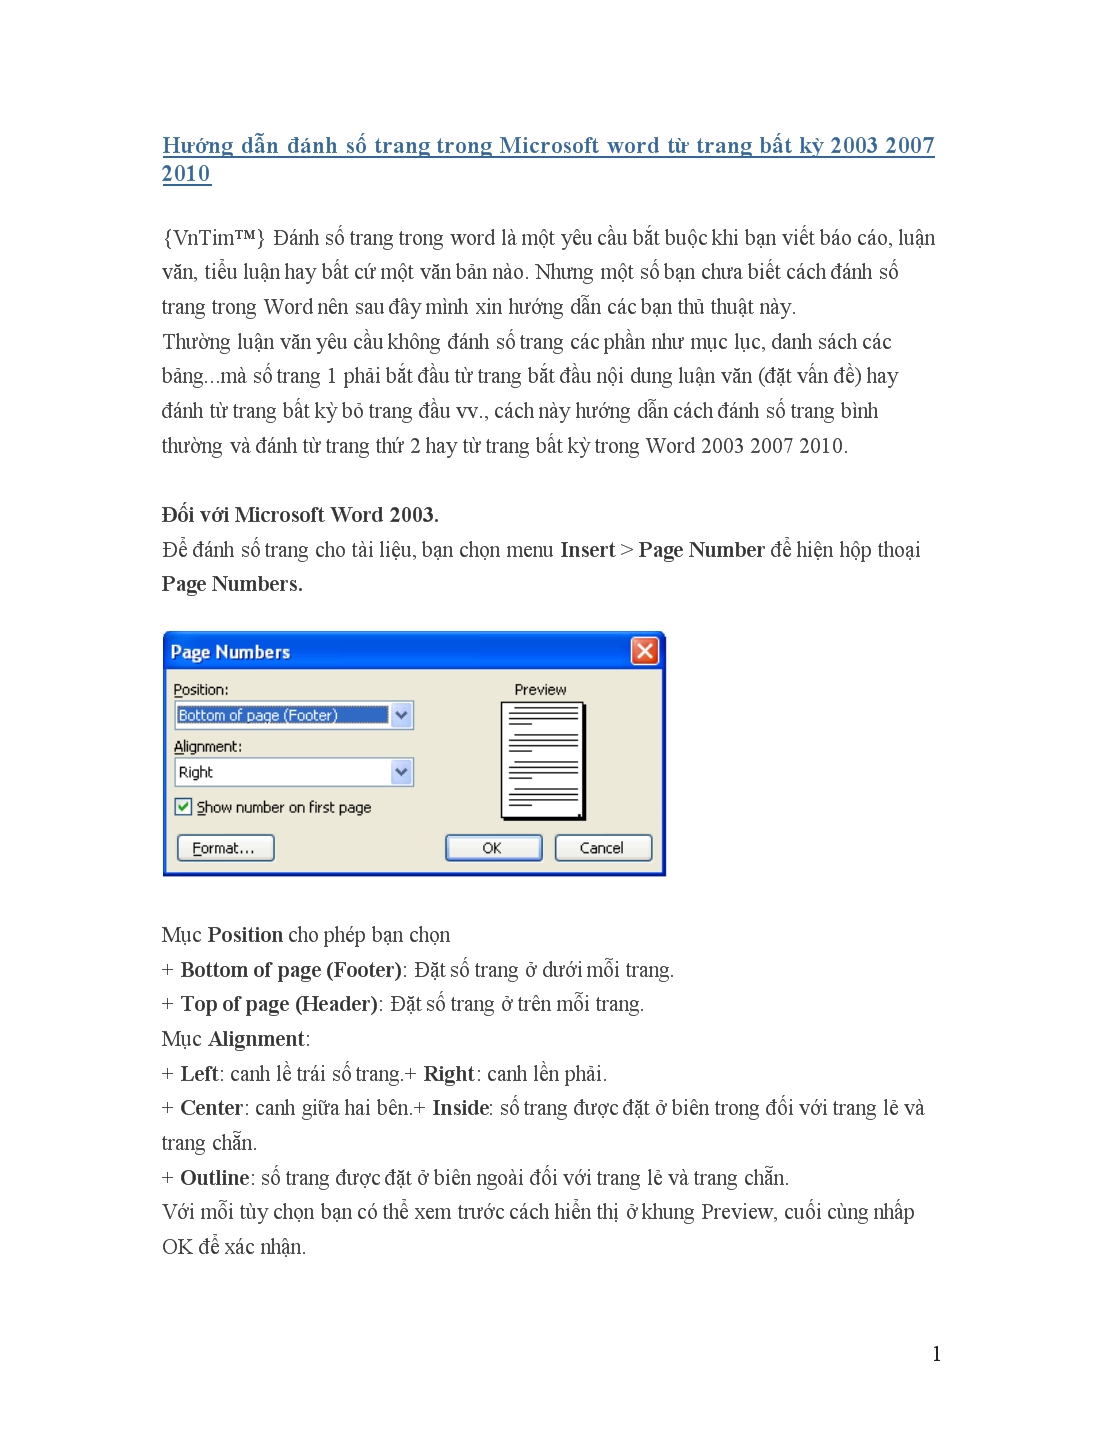 Hướng dẫn đánh số trang trong Microsoft word từ trang bất kỳ 2003 2007 2010 trang 1